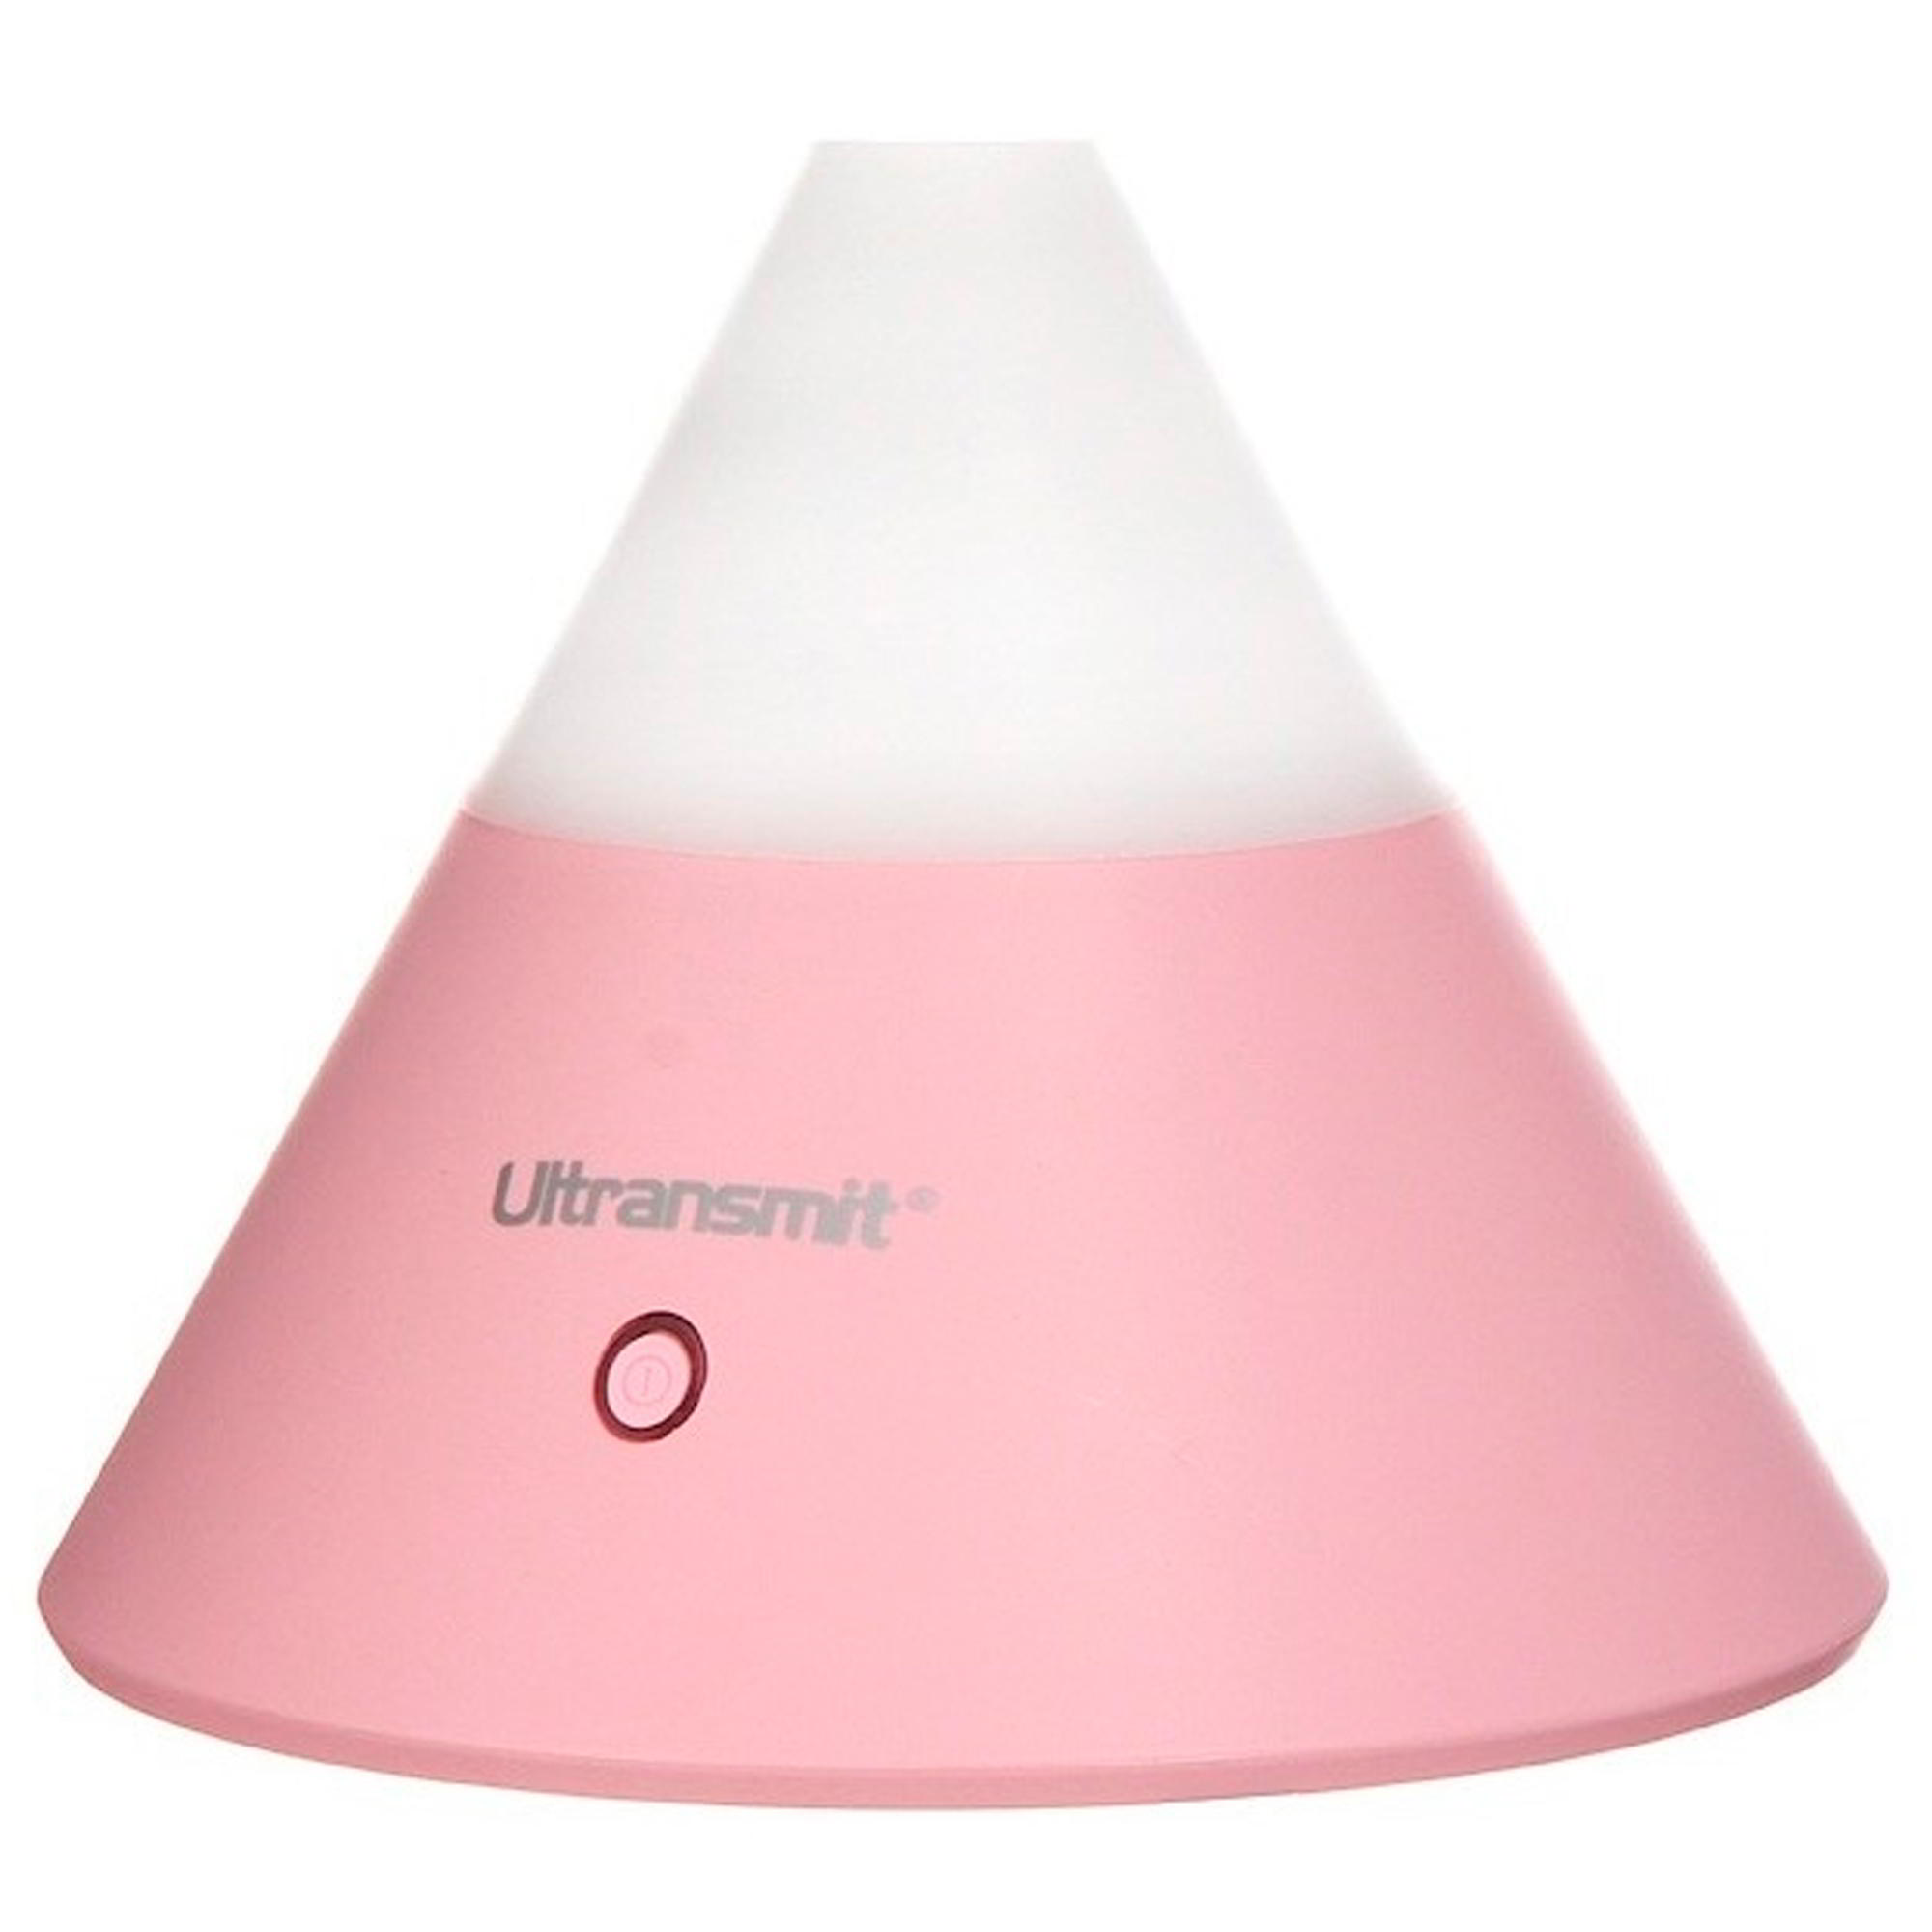 Увлажнитель воздуха AIC ULTRANSMIT 009 (розовый)